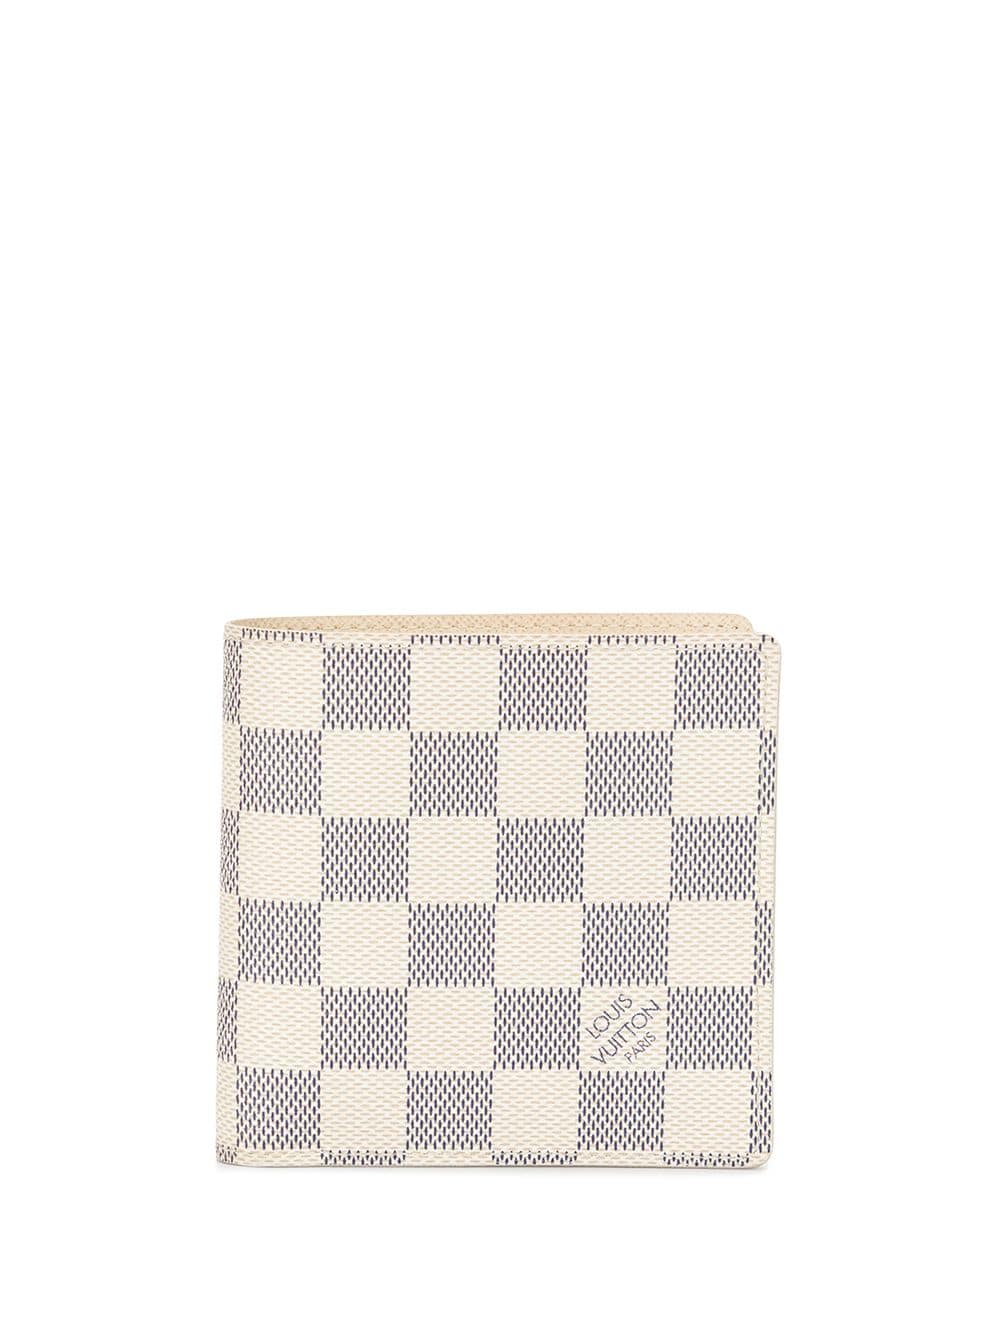 Louis Vuitton Marco Beige Canvas Wallet (Pre-Owned)